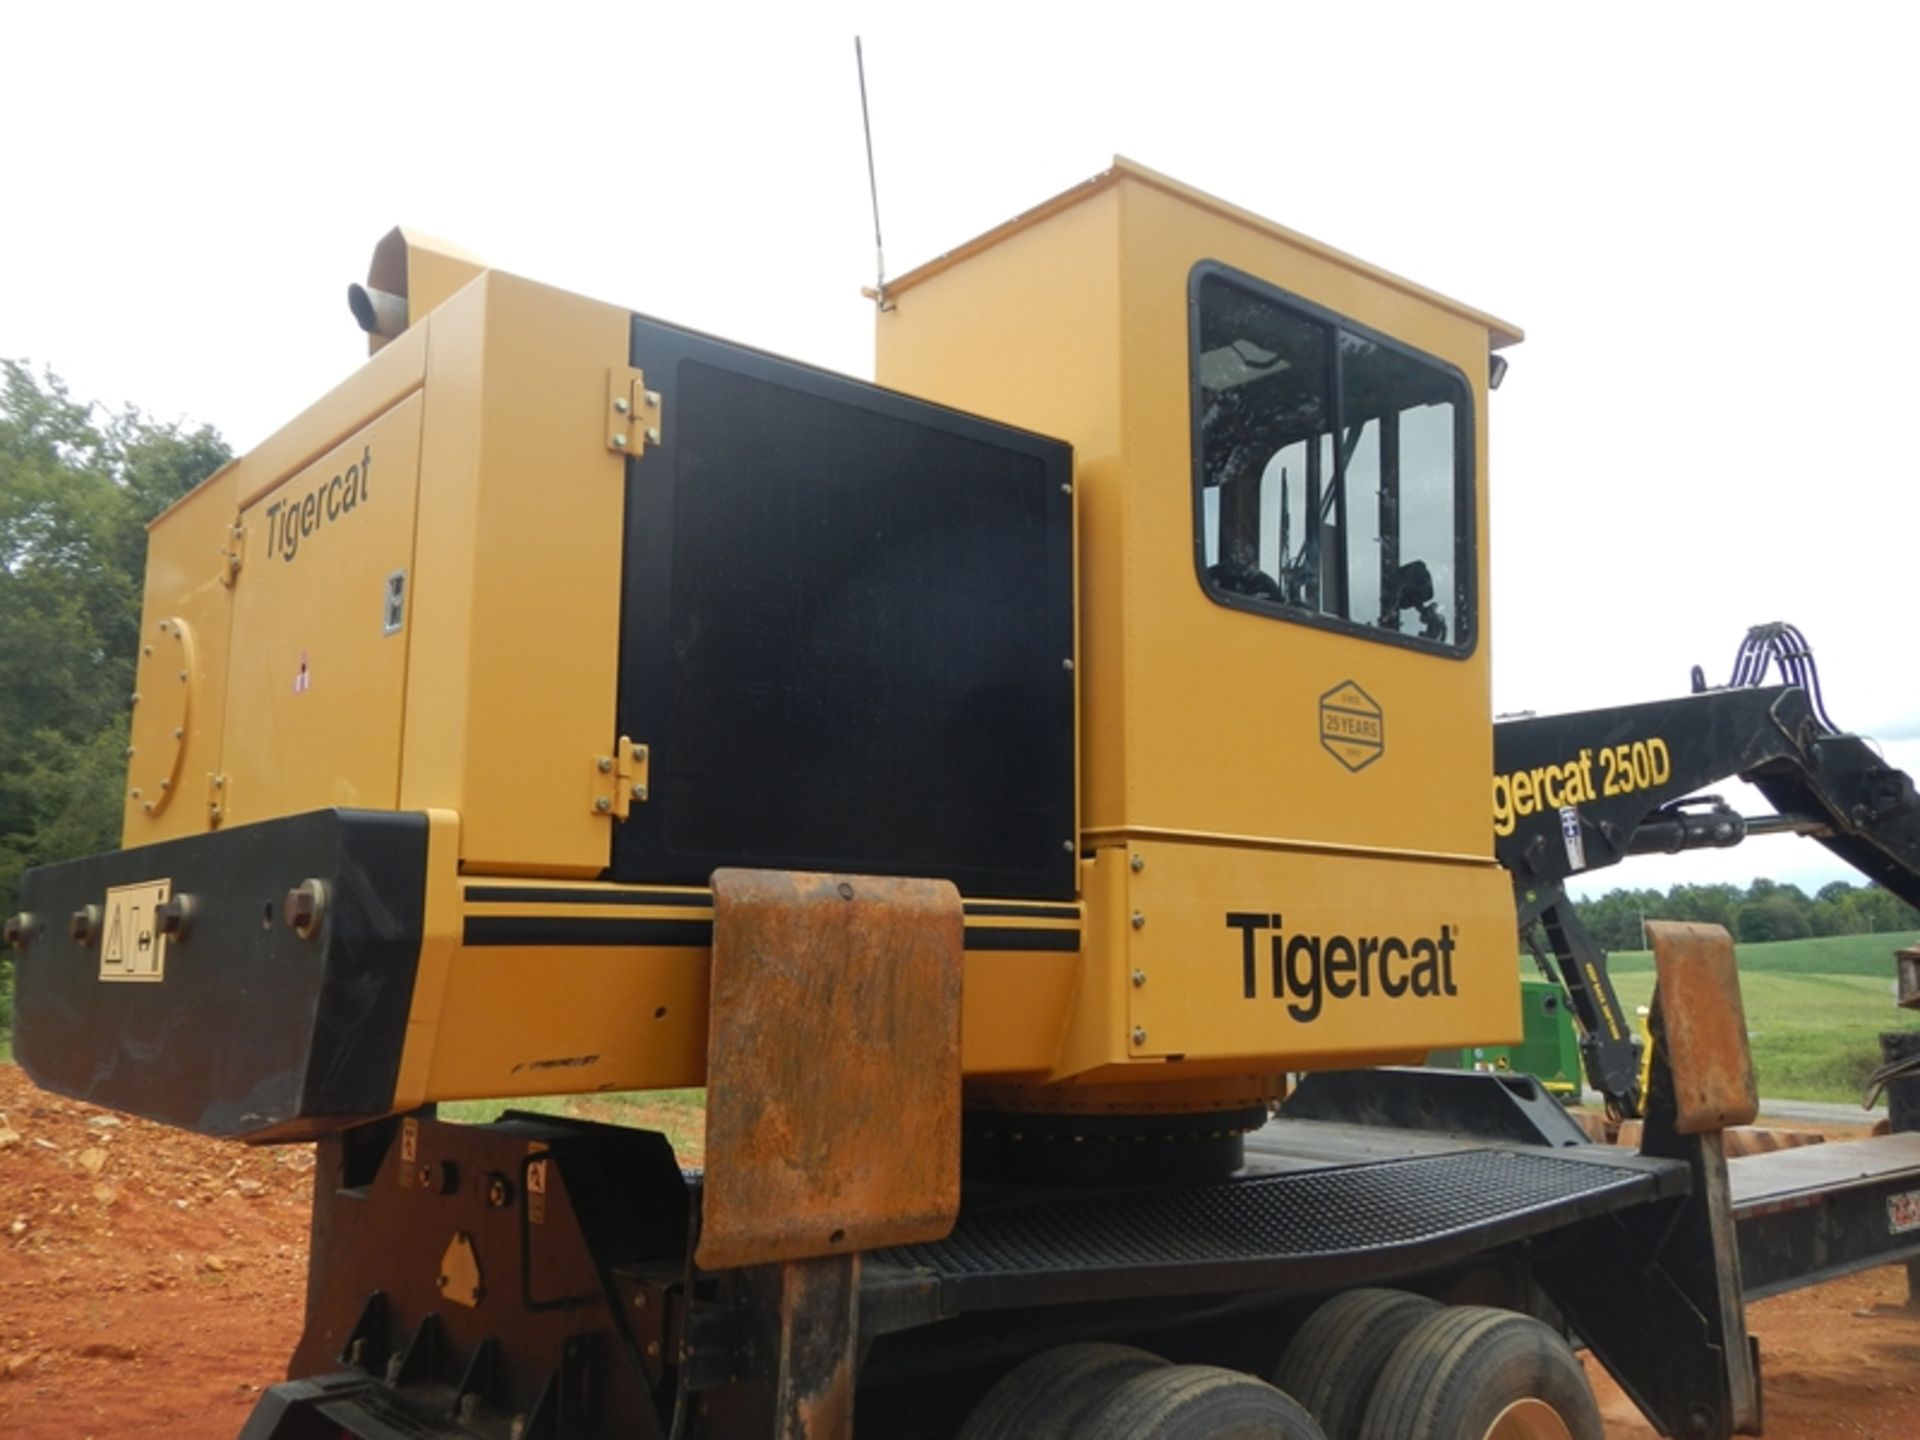 2018 Tiger Cat  250D loader vin# 2503083 5358 hrs w/CSI 264 Ultra delimber, & buck saw platform - Image 14 of 22